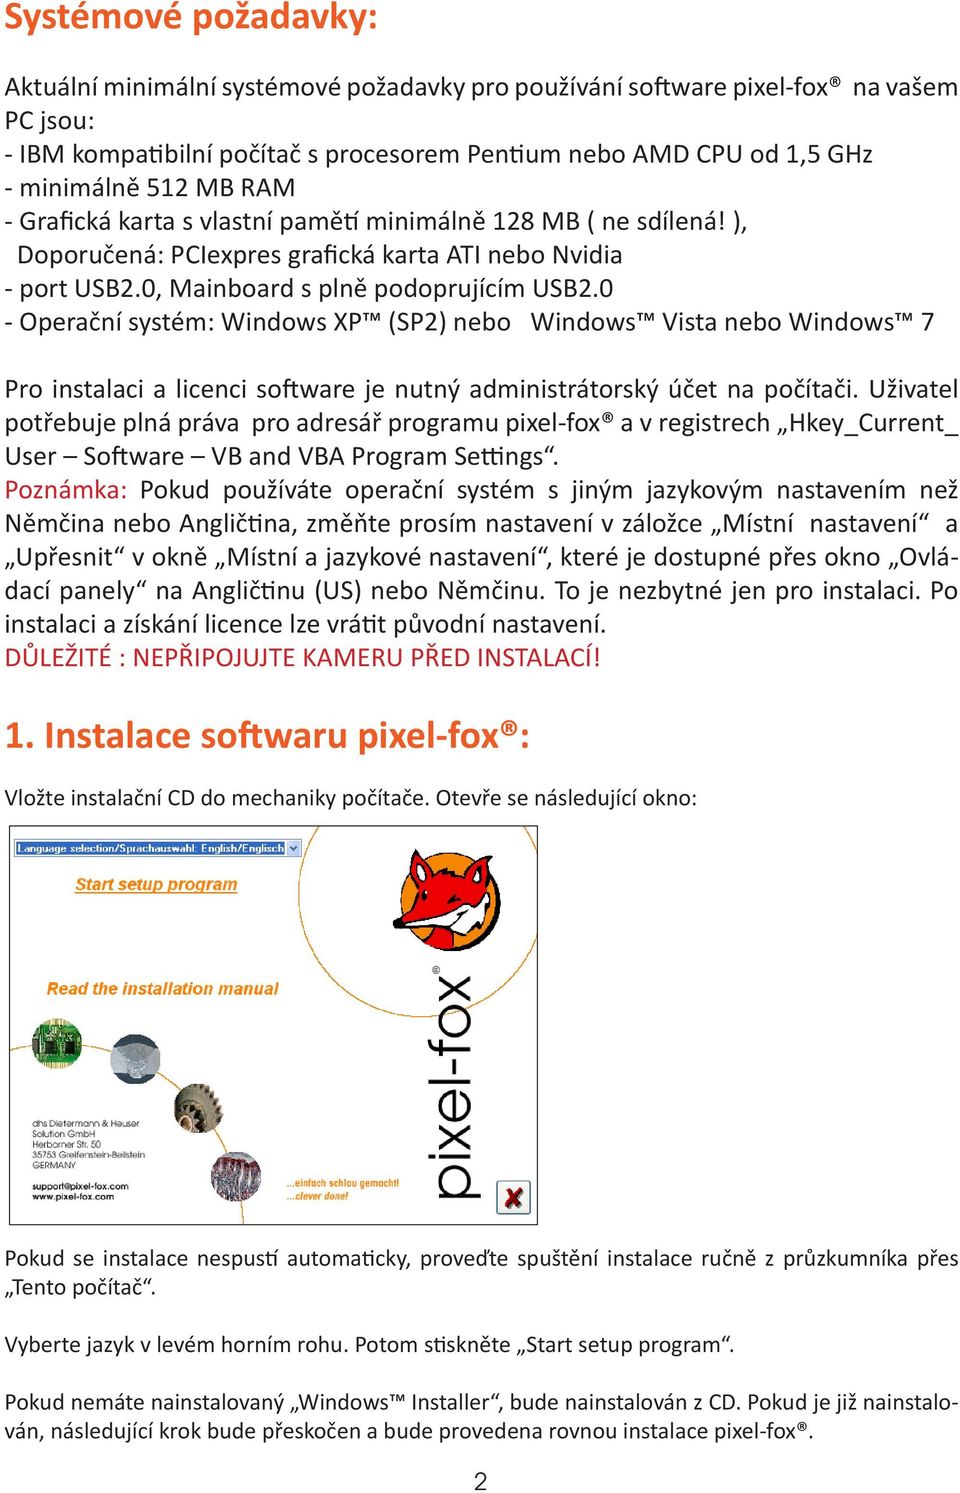 0 - Operační systém: Windows XP (SP2) nebo Windows Vista nebo Windows 7 Pro instalaci a licenci software je nutný administrátorský účet na počítači.